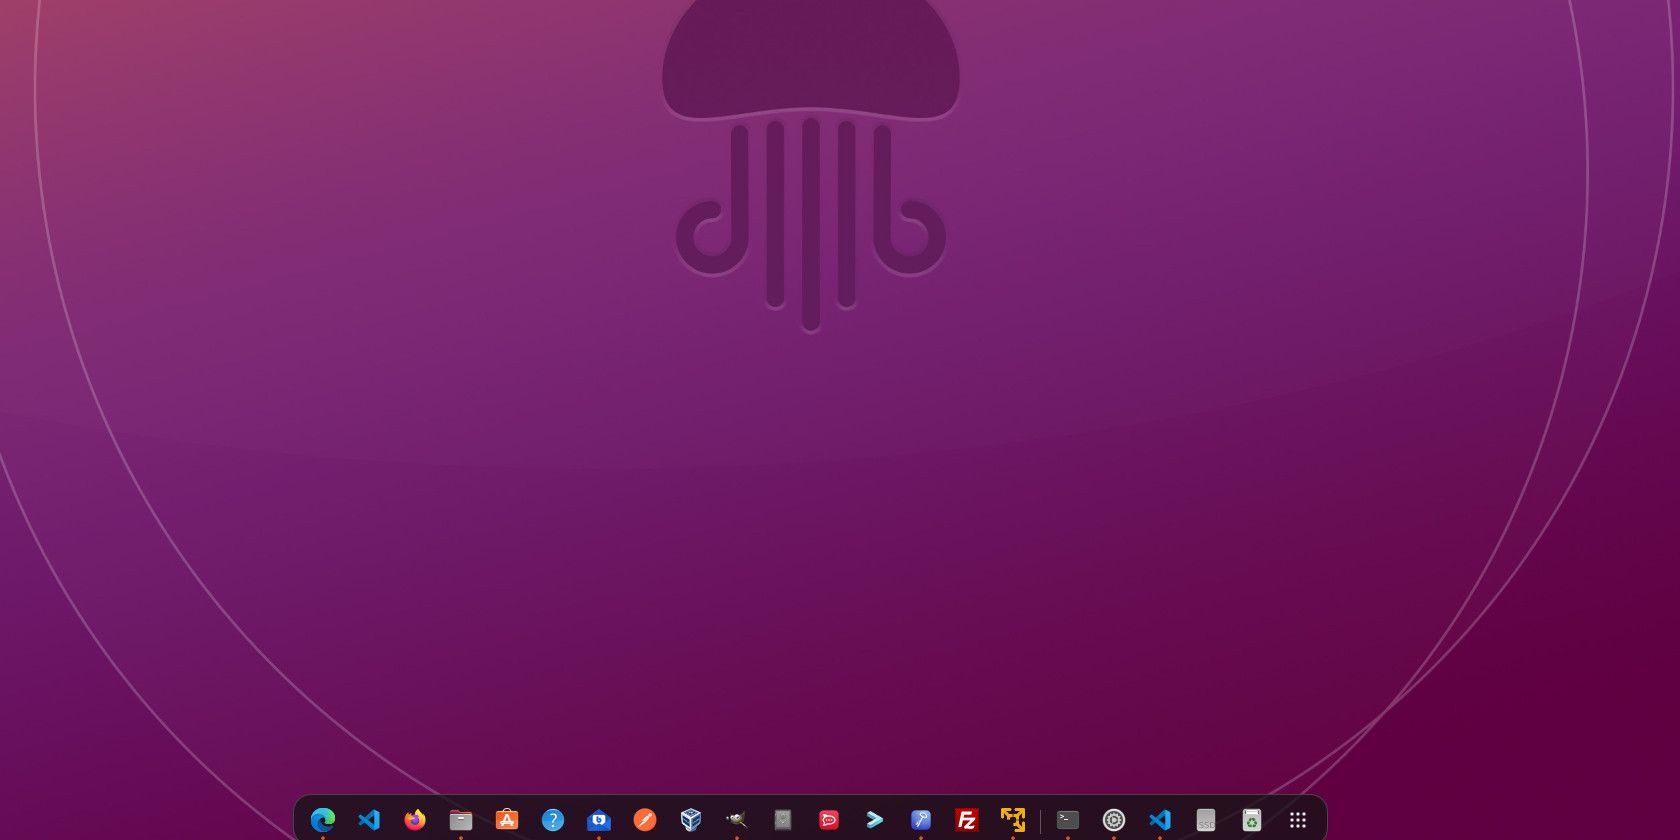 ubuntu screen wallpaper